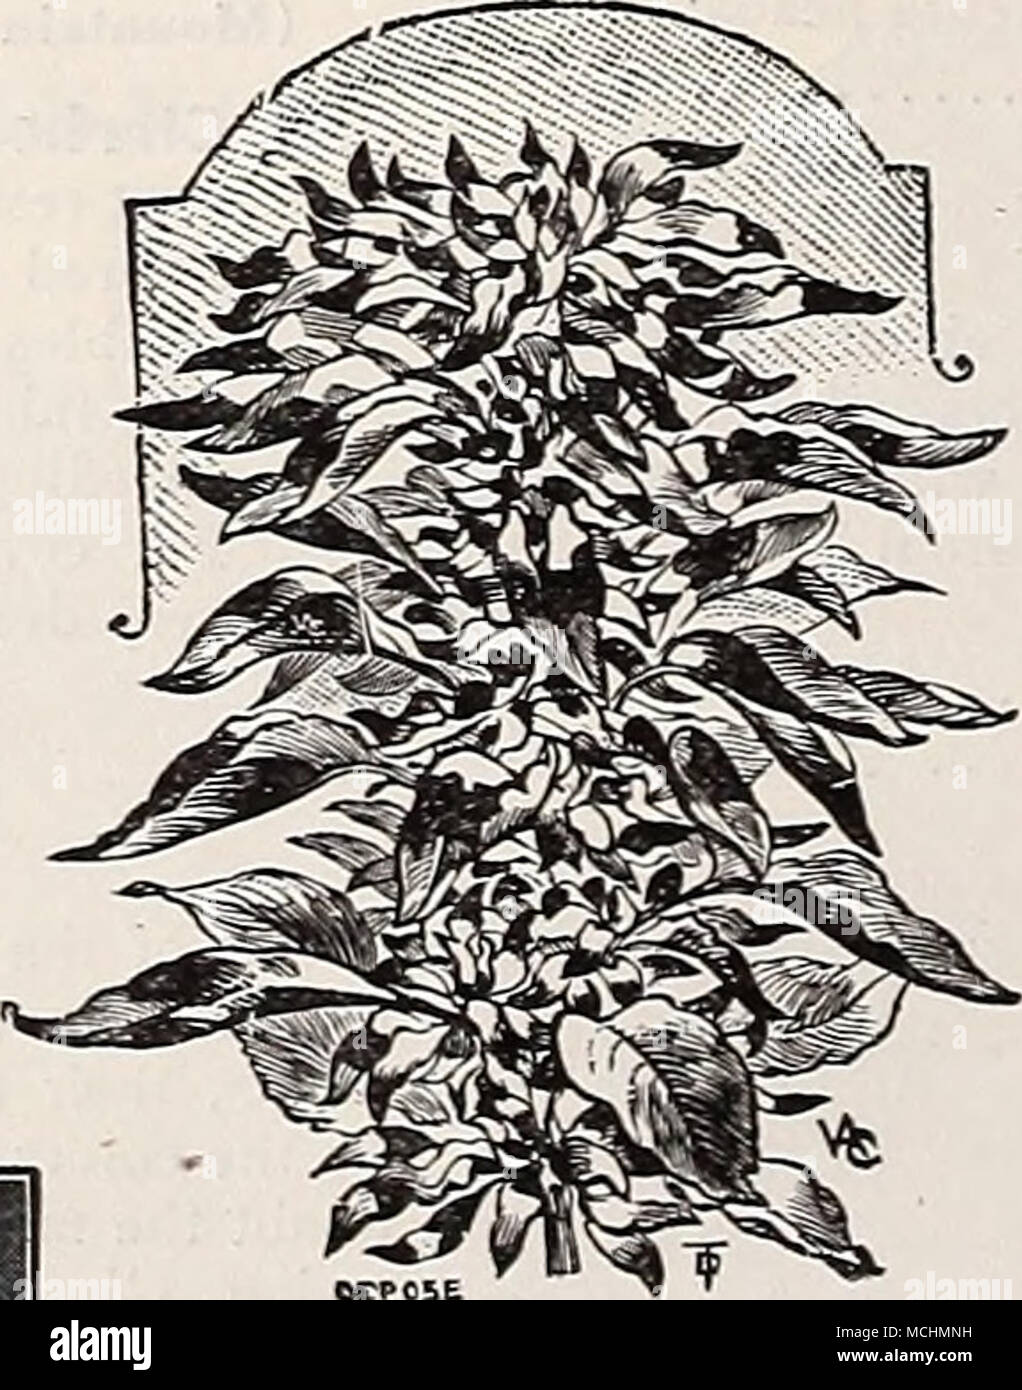 . Eine BOKDHR von Al'S? um LlTTLH Juwel AMPEI^ OPSIS (Boston, oder Japanischen Efeu) PBB PKT. 1131 Veitchl. Eine robuste Mehrjährige Kletterpflanze, mit Oliv-grüne Blätter, die zu Scarlet im Herbst drehen. Die besten und beliebtesten Kletterpflanze für Ziegel- oder Steinmauern. Pro Unze., 50 cts. 10 Amaranthus Tricolor Agrostbuma Coronaria (ANCHUSA Capensis Alkanet) 1137{Kap Vergessen-7 ne - nicht). Eine feine frei wachsende jährliche Reihe ca. 18 cm hoch, mit Sprays von schönen Forget-me-not blaue Blüten, blüht den ganzen Sommer. J oz., 25' cts. .. 10 1138 Italica Dropmore Vielfalt. Eine der besten Stauden und mehr kommen werden. Stockfoto